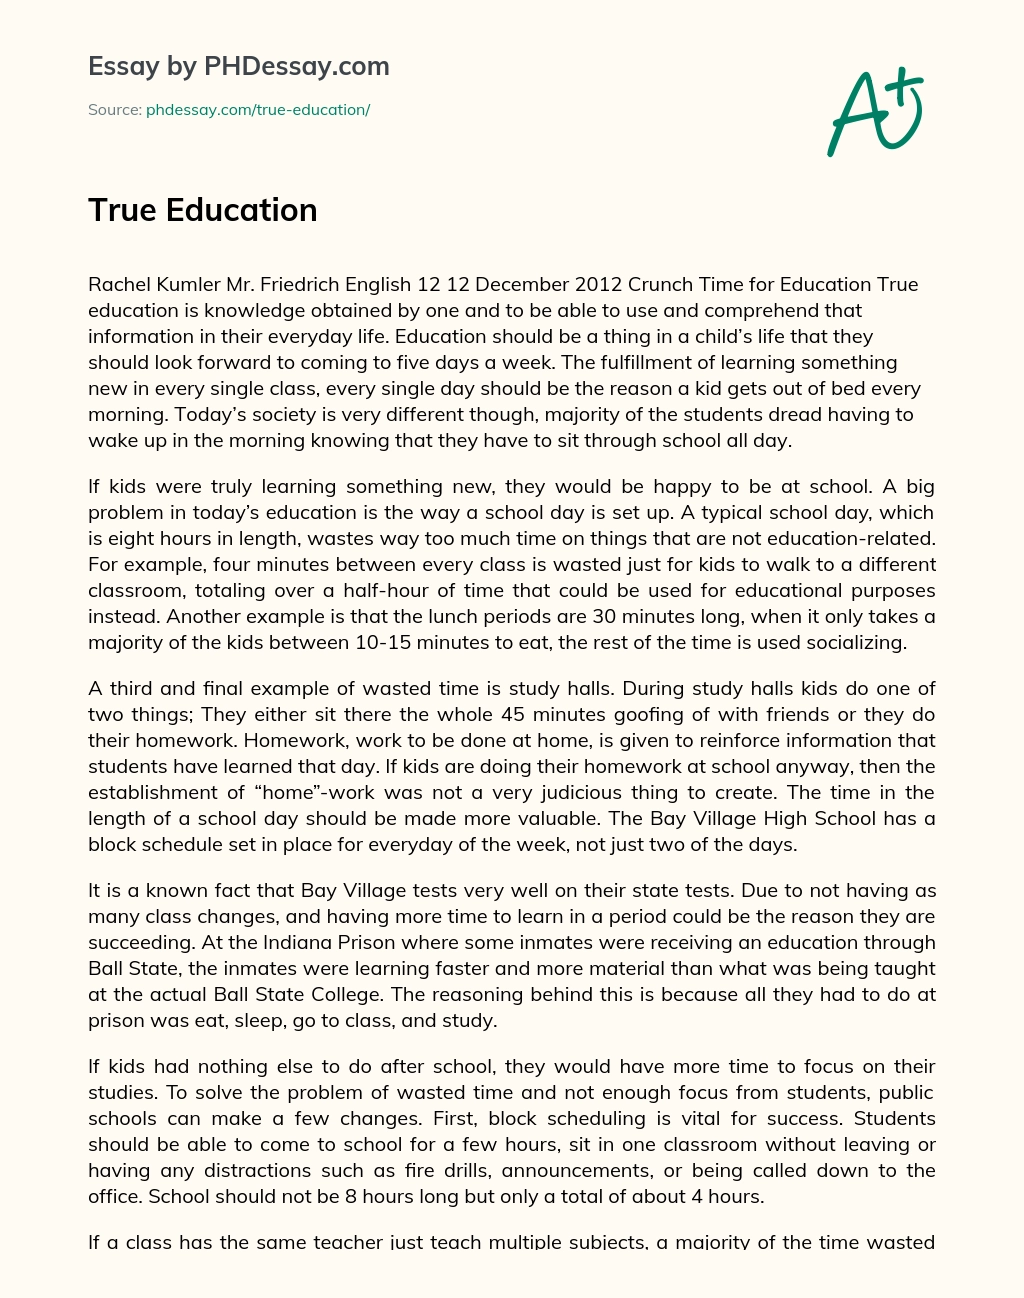 True Education essay